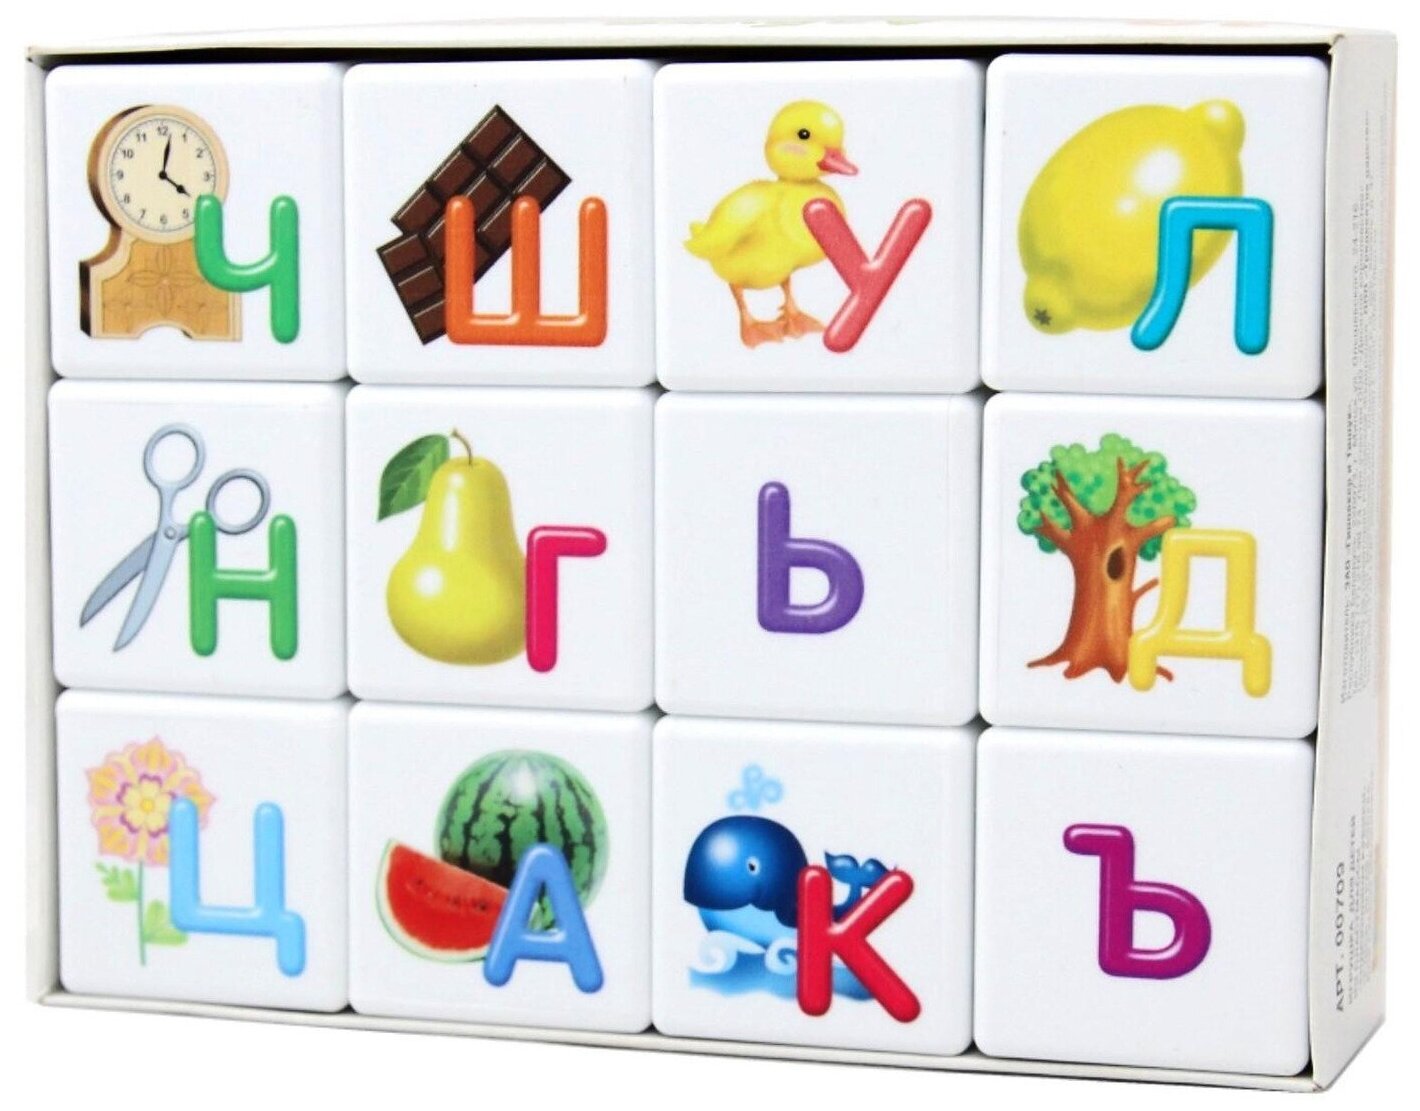 Пластиковые кубики "Учись играя. Азбука для самых маленьких", учим буквы русского алфавита, 12 пластмассовых элементов